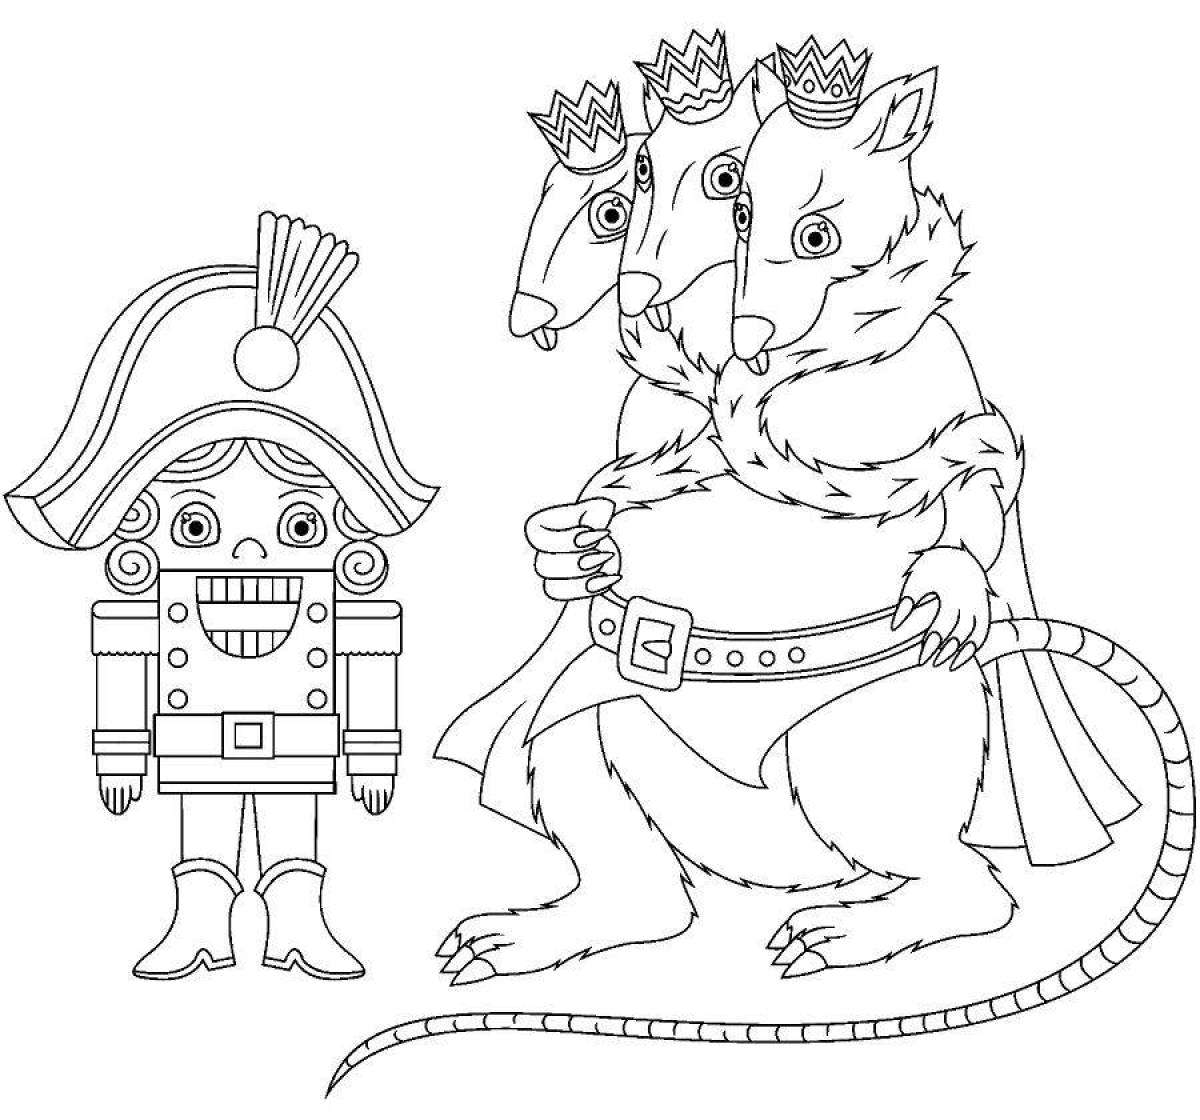 Щелкунчик и мышиный король #1